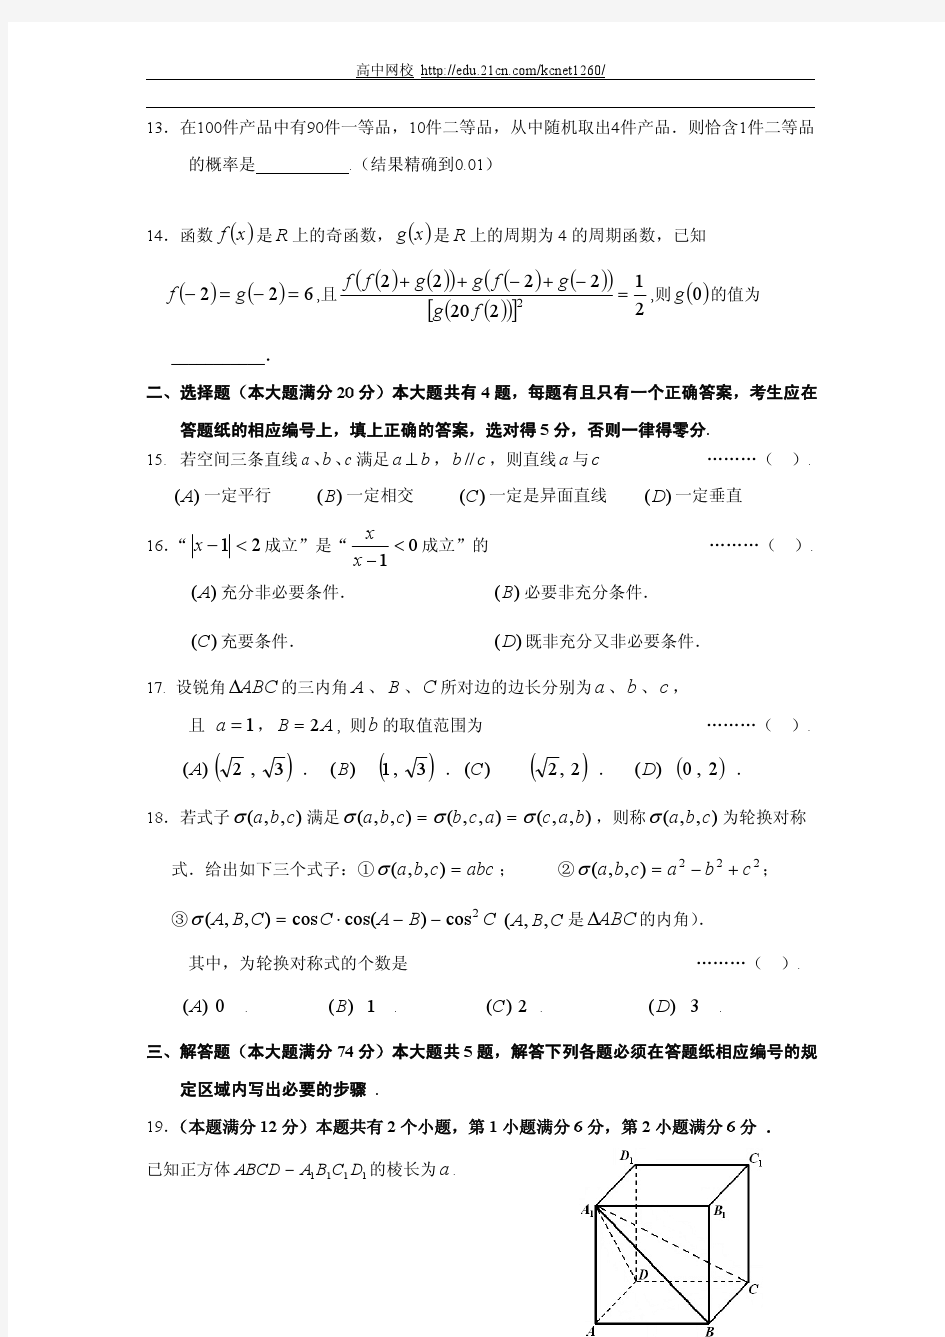 2014年上海杨浦区高考文科数学一模试题